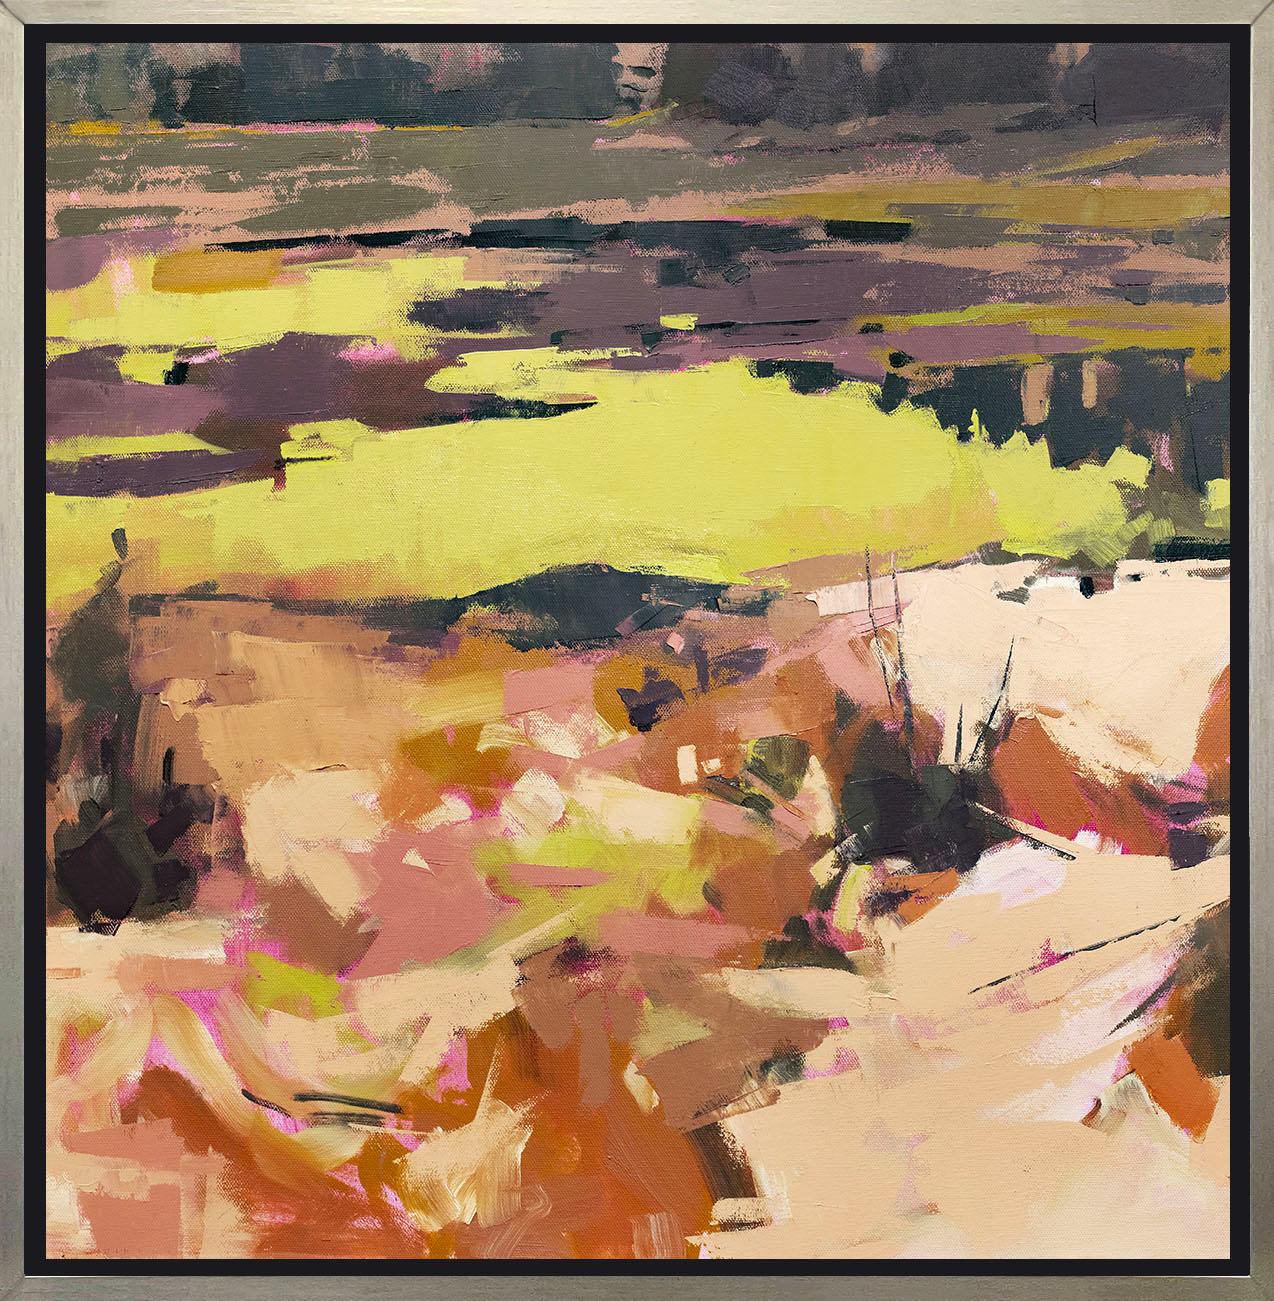 Diese limitierte Auflage des Giclée-Landschaftsdrucks von Bri Custer hat eine Auflage von 195 Stück. Die Palette besteht aus gedämpften Orange- und Erdtönen, die von leuchtendem Gelb kontrastiert werden. Dieses auf Leinwand gedruckte Giclée wird in